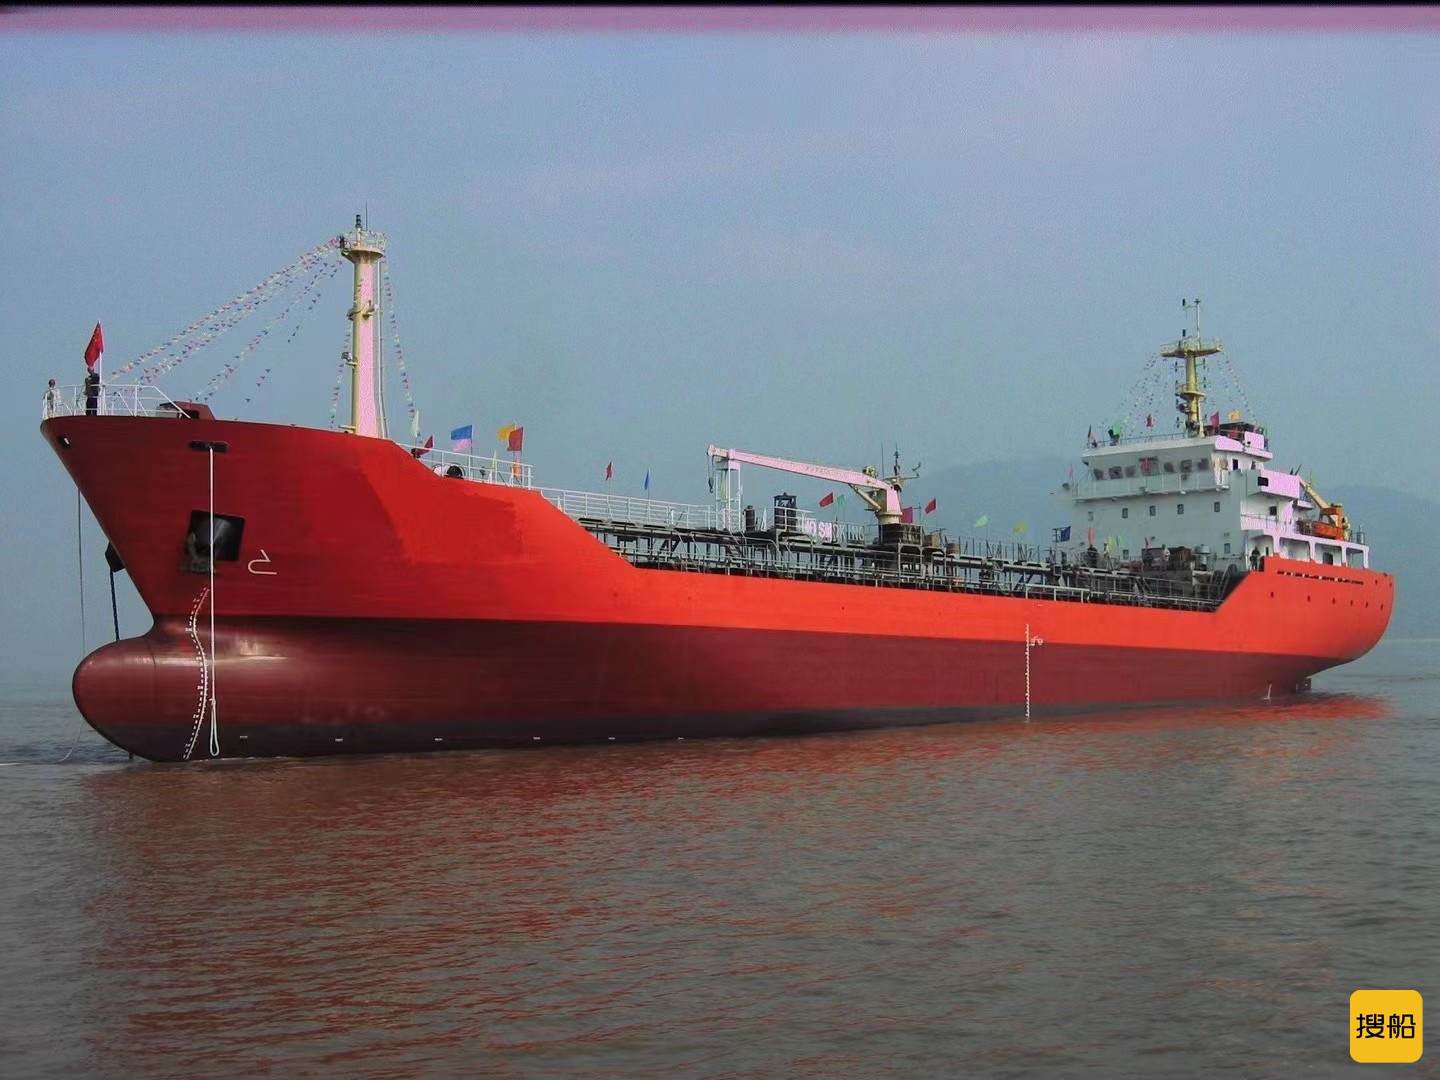 出售.7500吨成品油船.